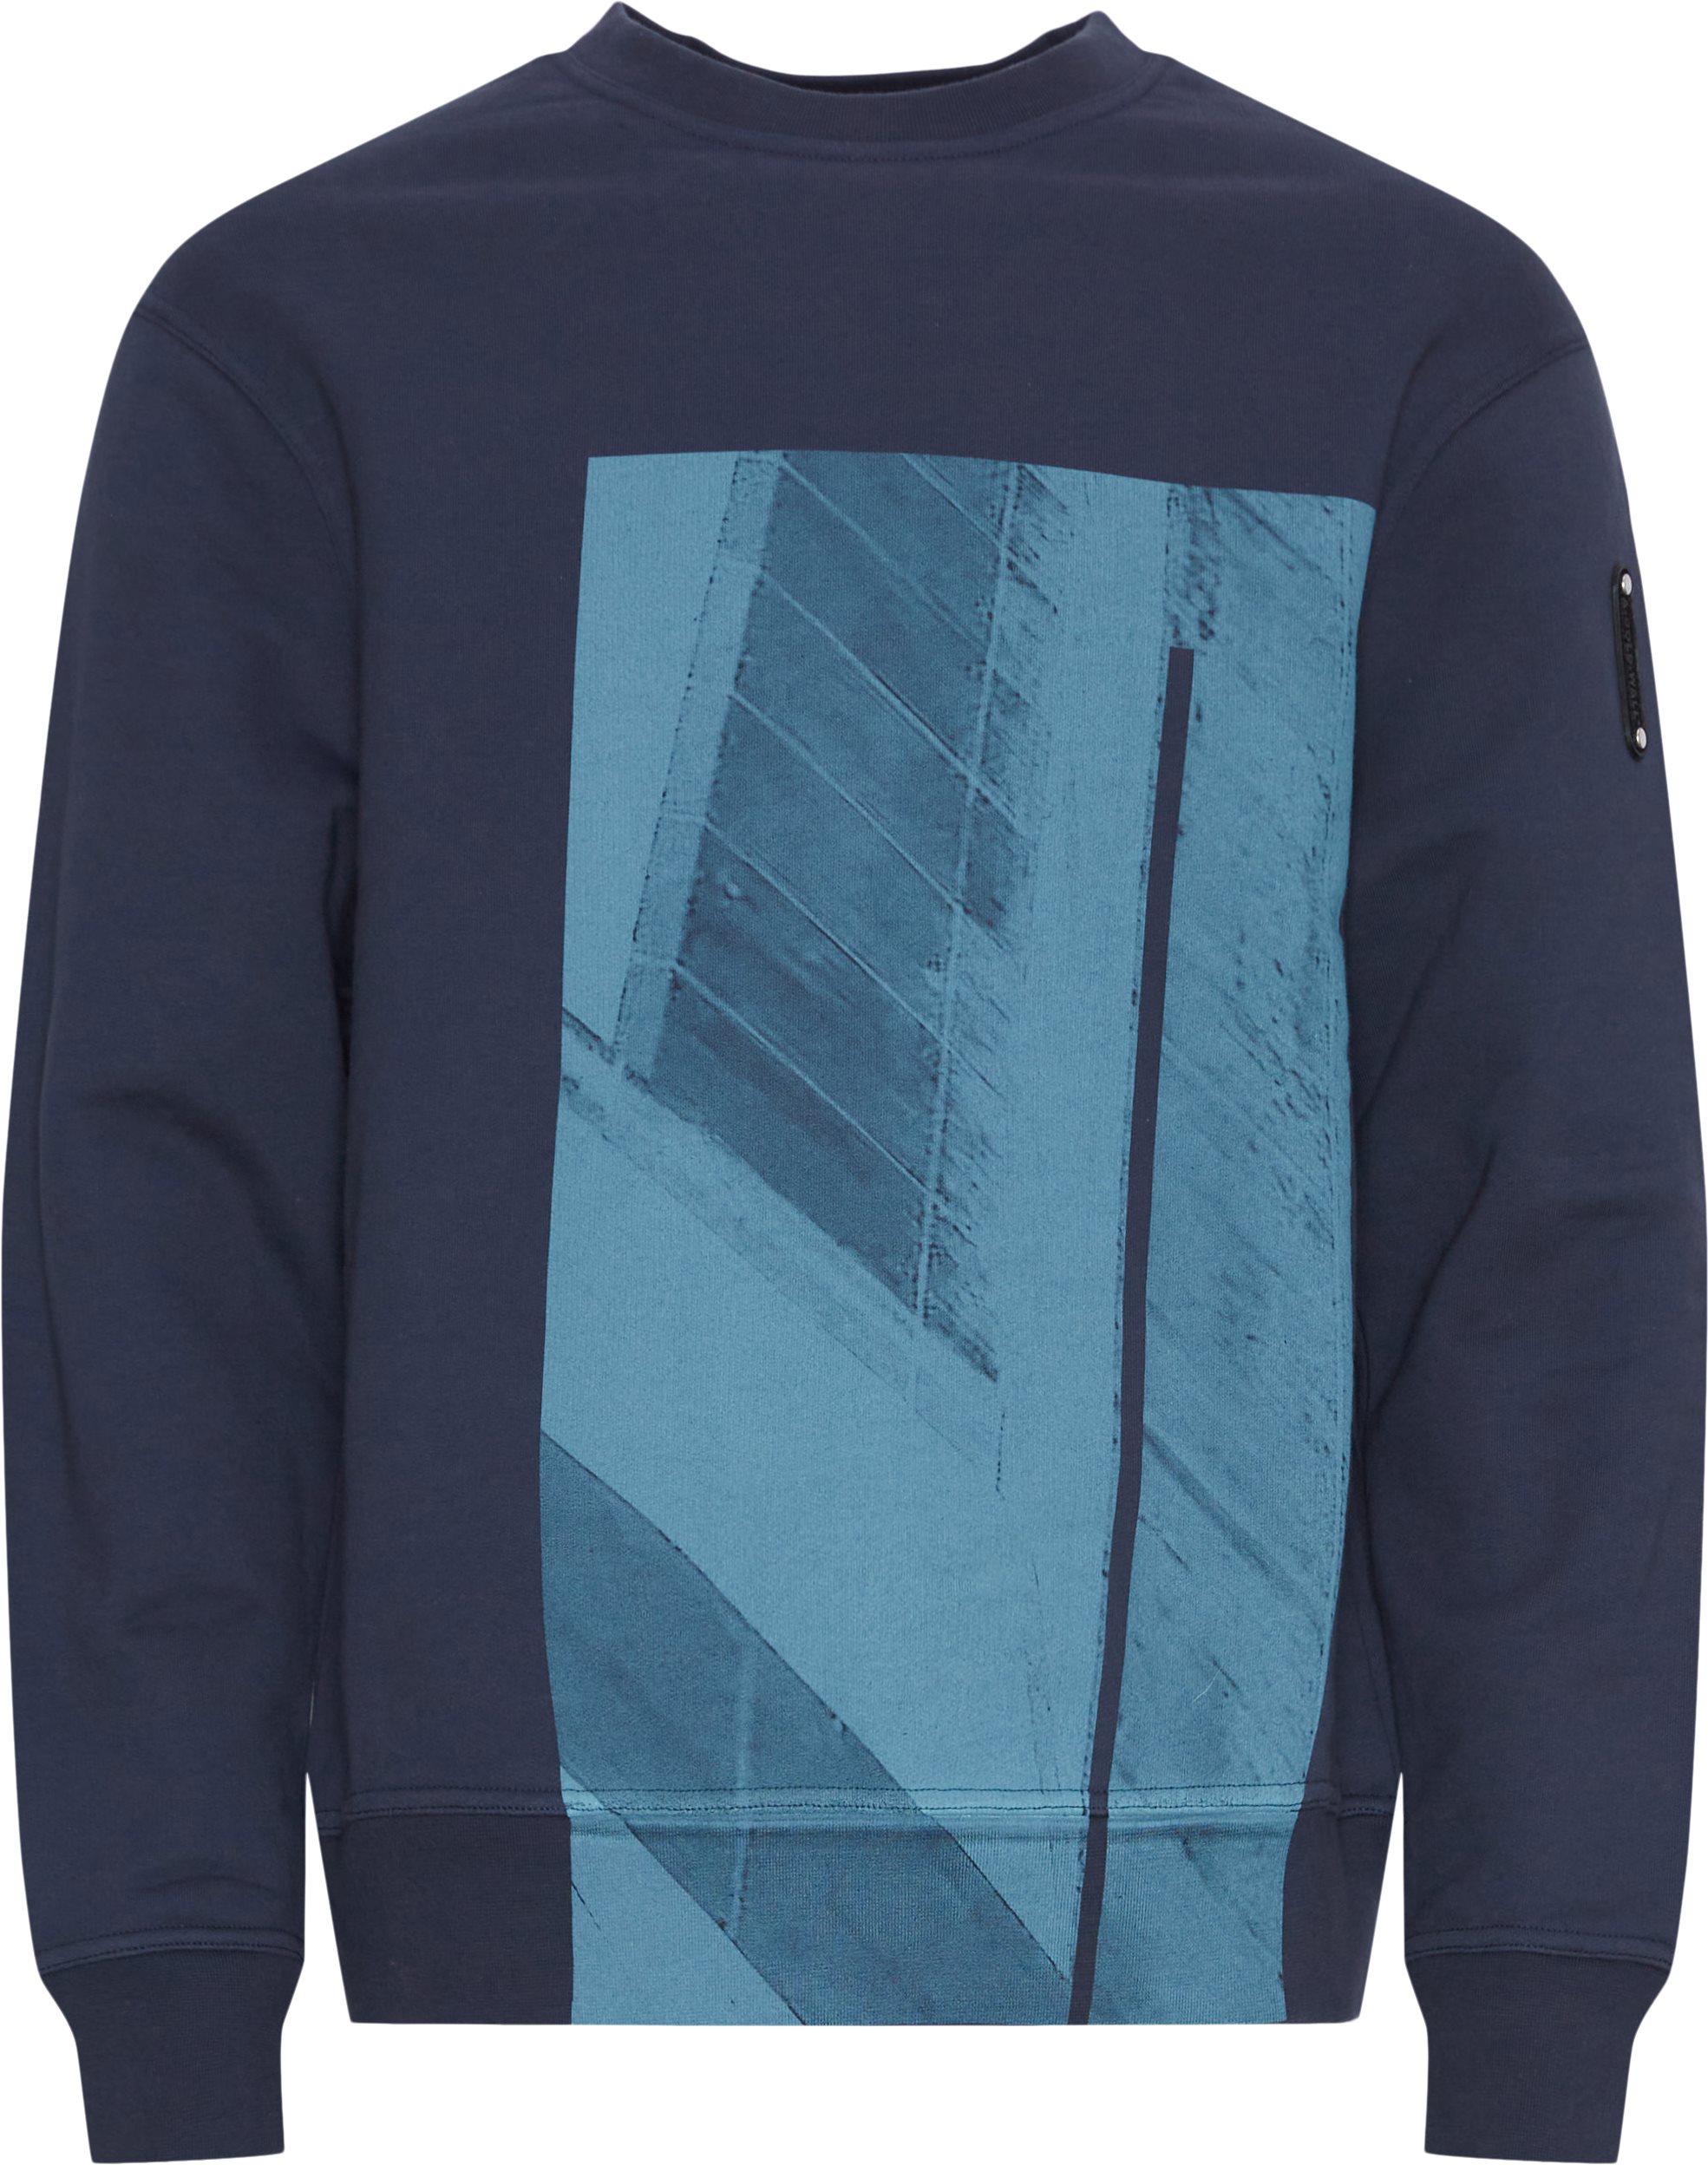 A-COLD-WALL* Sweatshirts ACWMW188 Blue